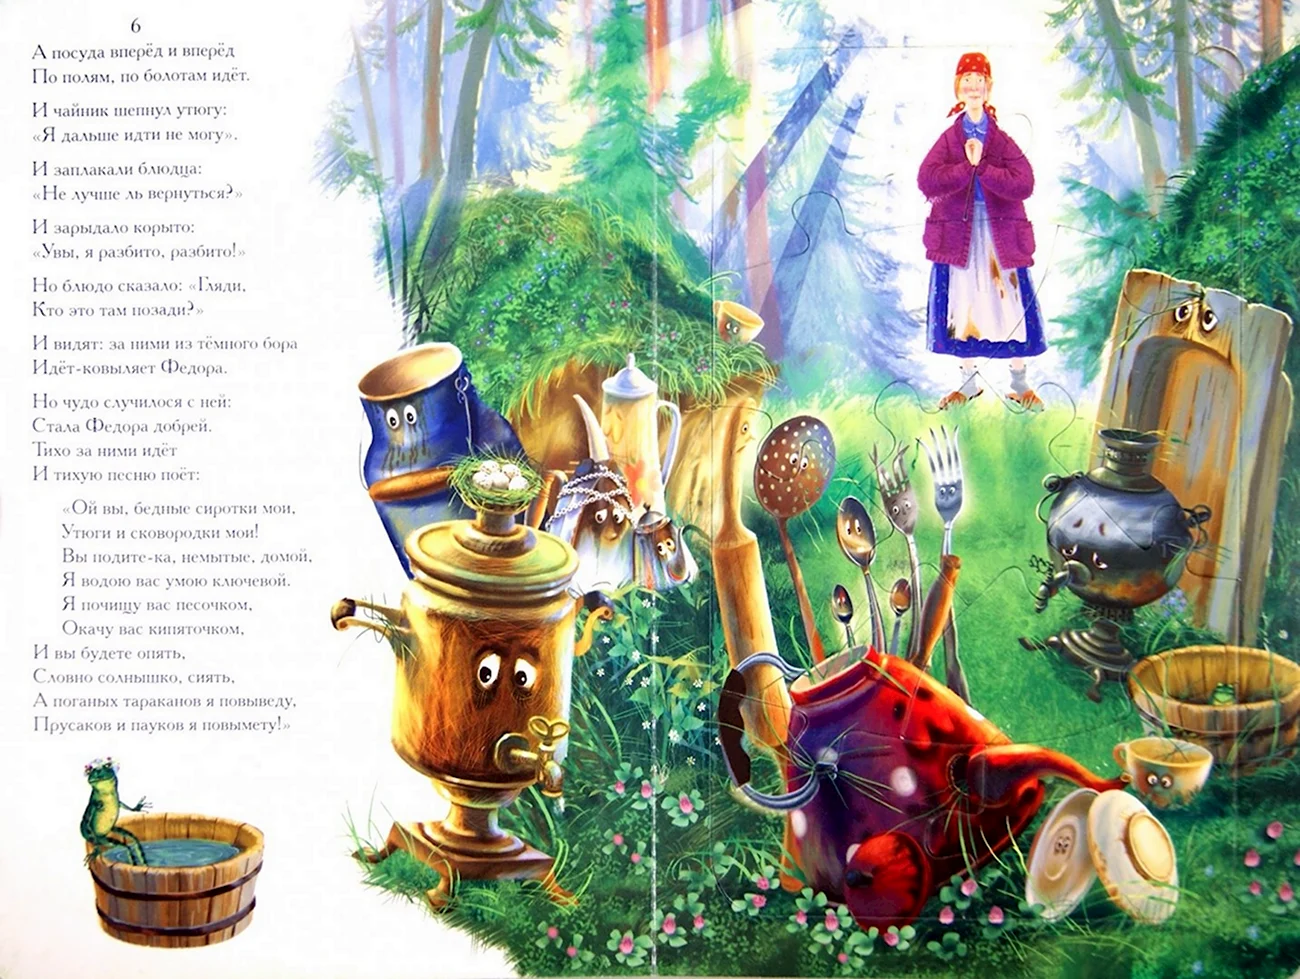 Стихотворение Корнея Чуковского Федорино горе. Картинка